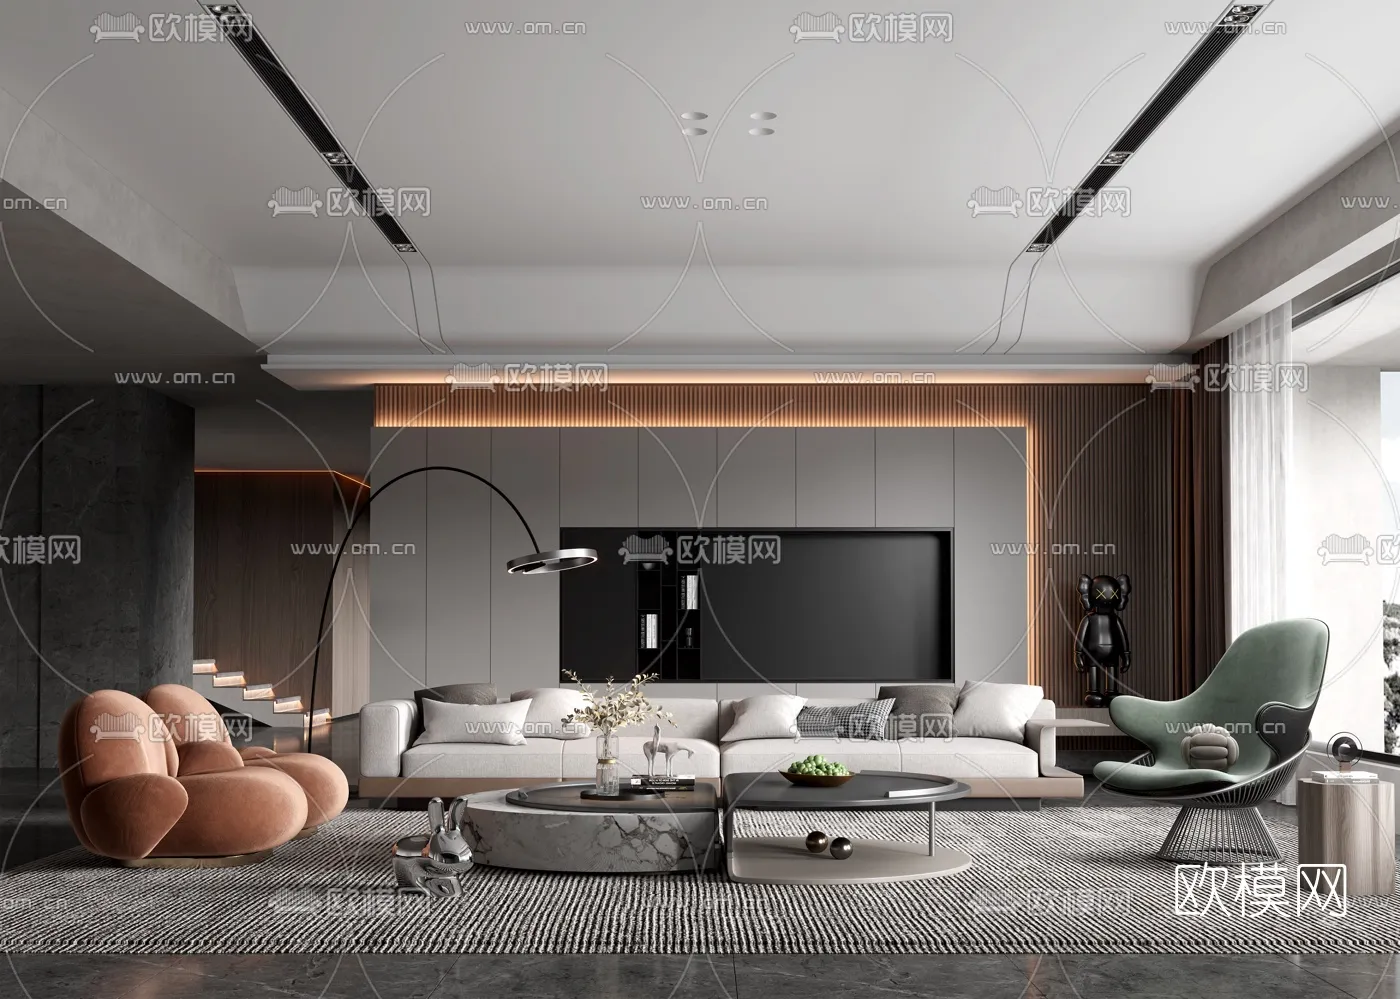 Living Room 3D Scenes – 0895